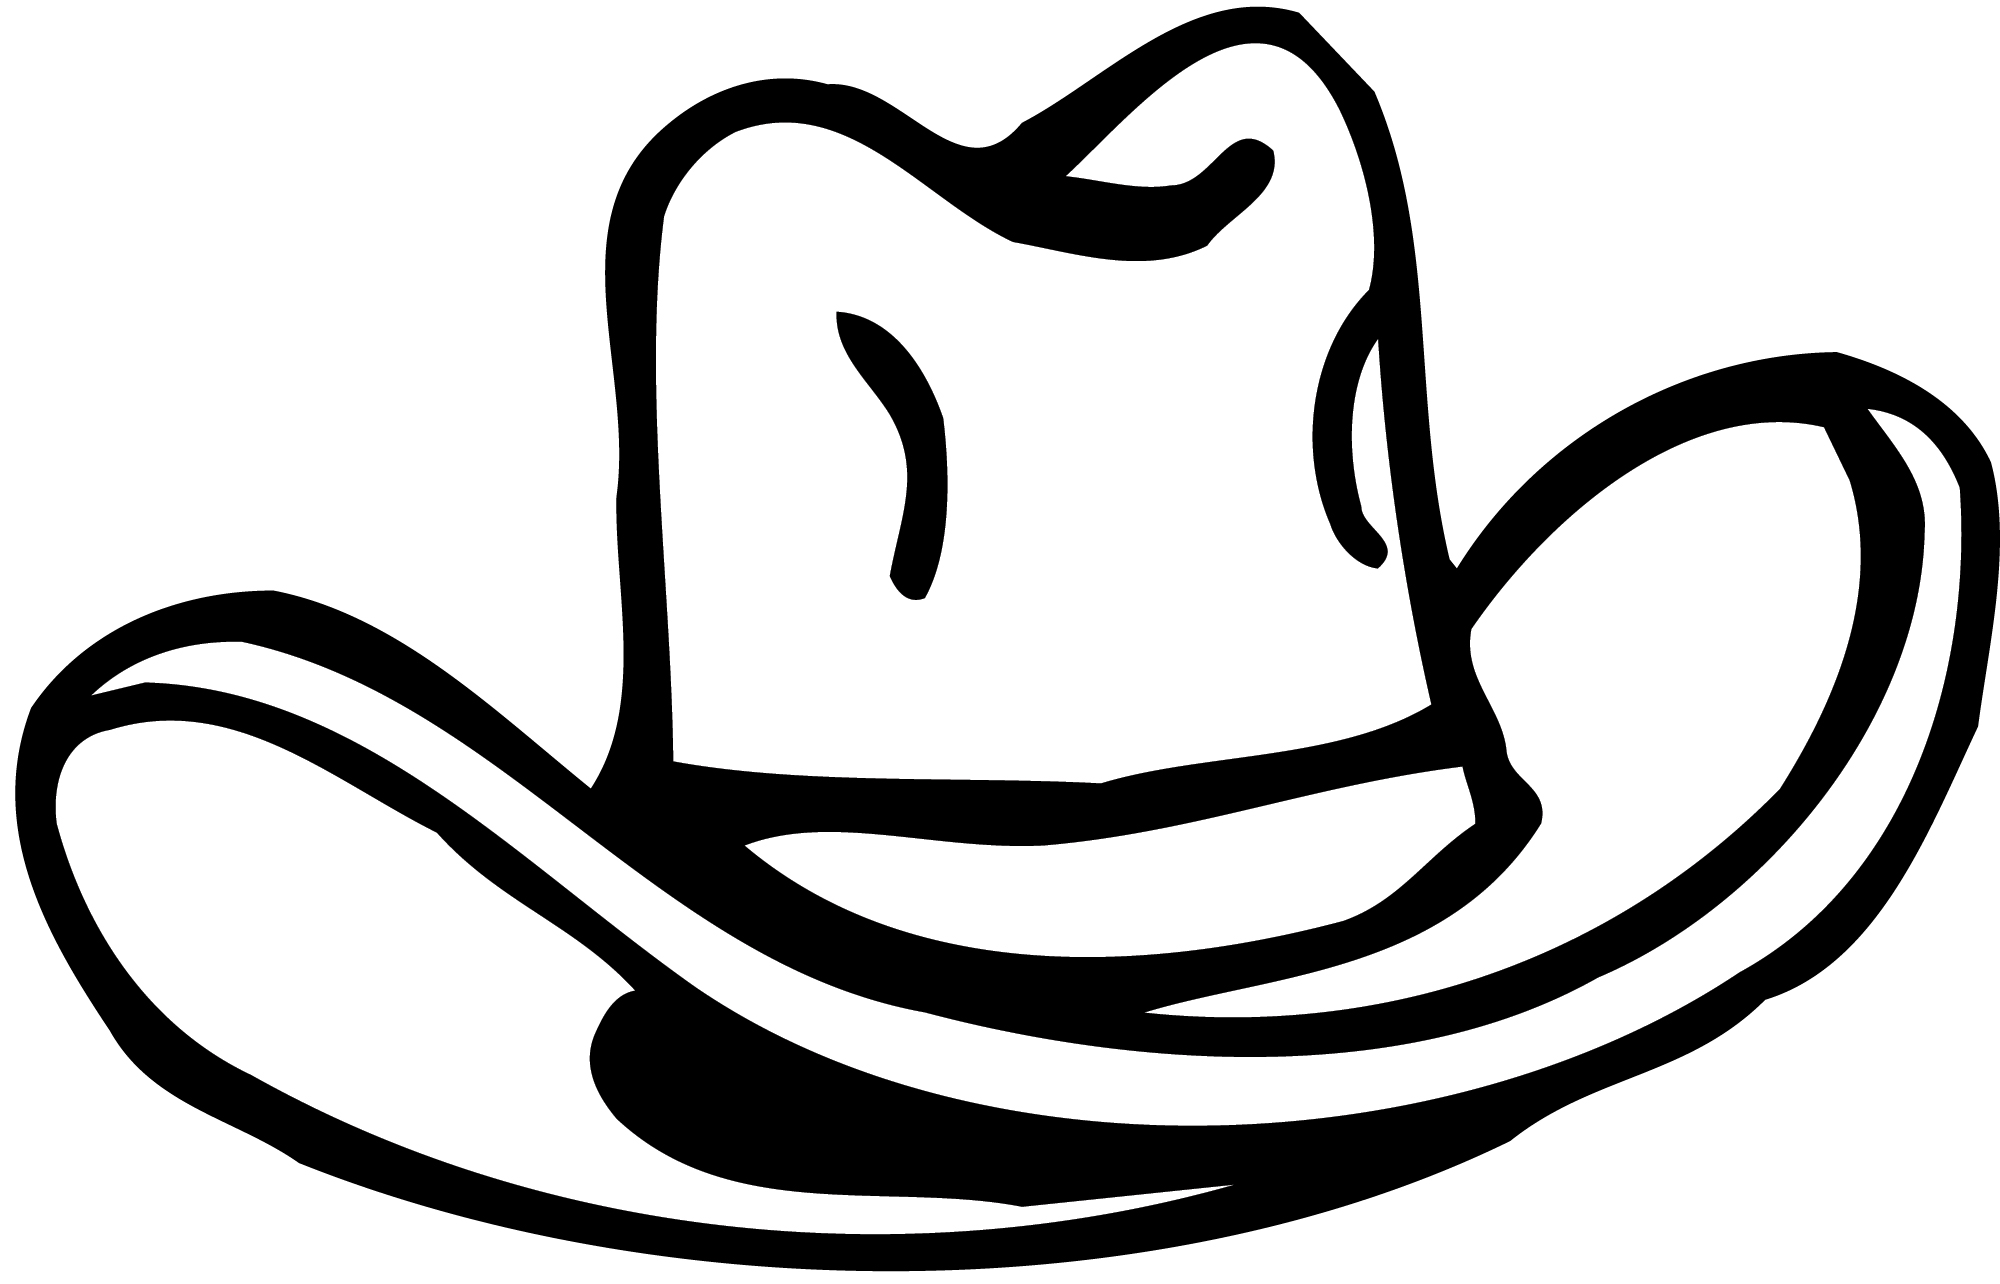 Cowboy Hat 7 Http Www How To Draw Funny Cartoons Com Cartoon ...